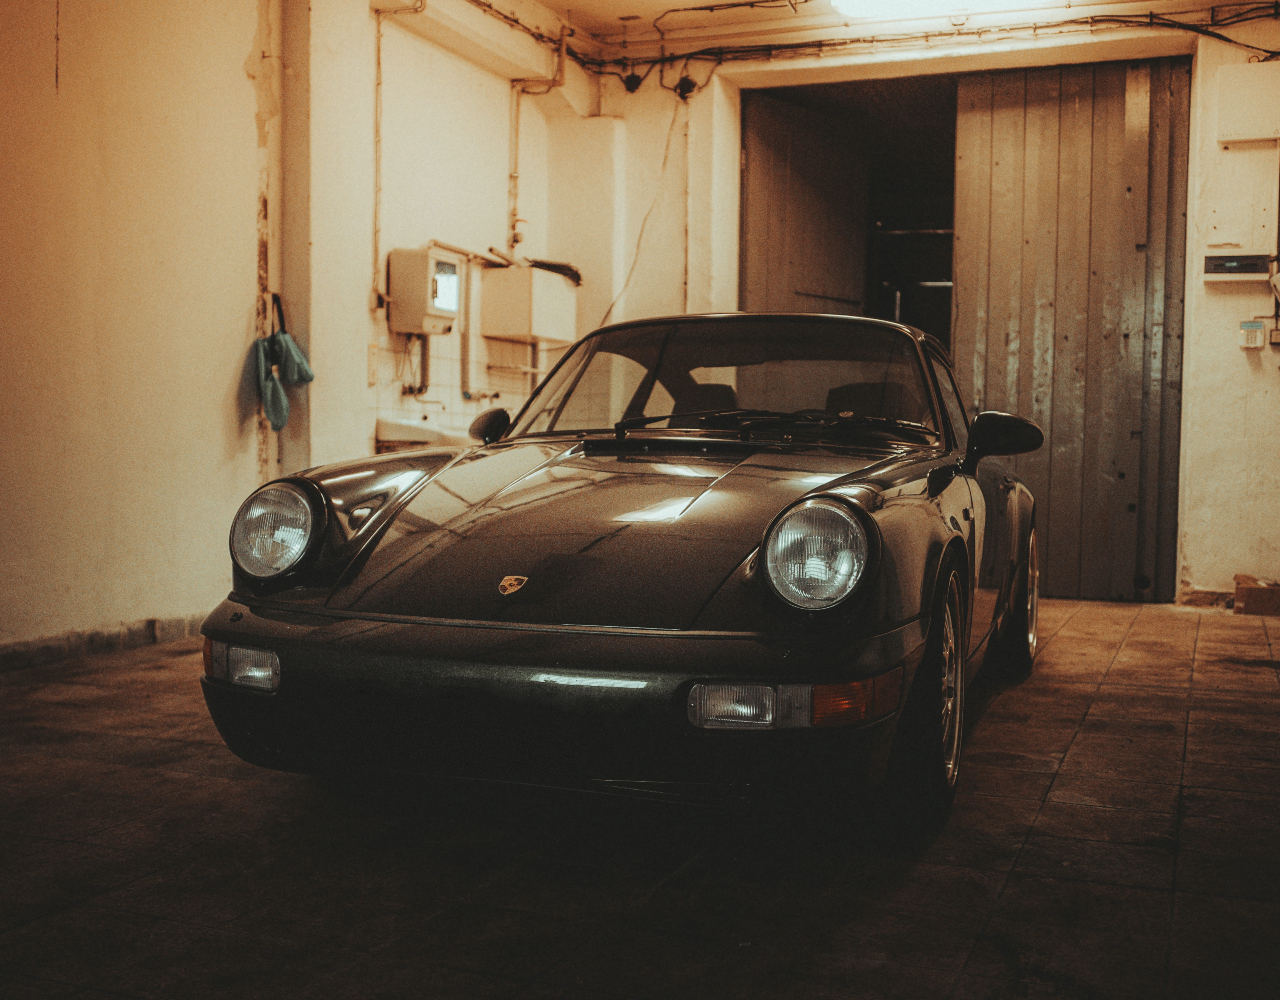 Black 1991 Porsche in a garage